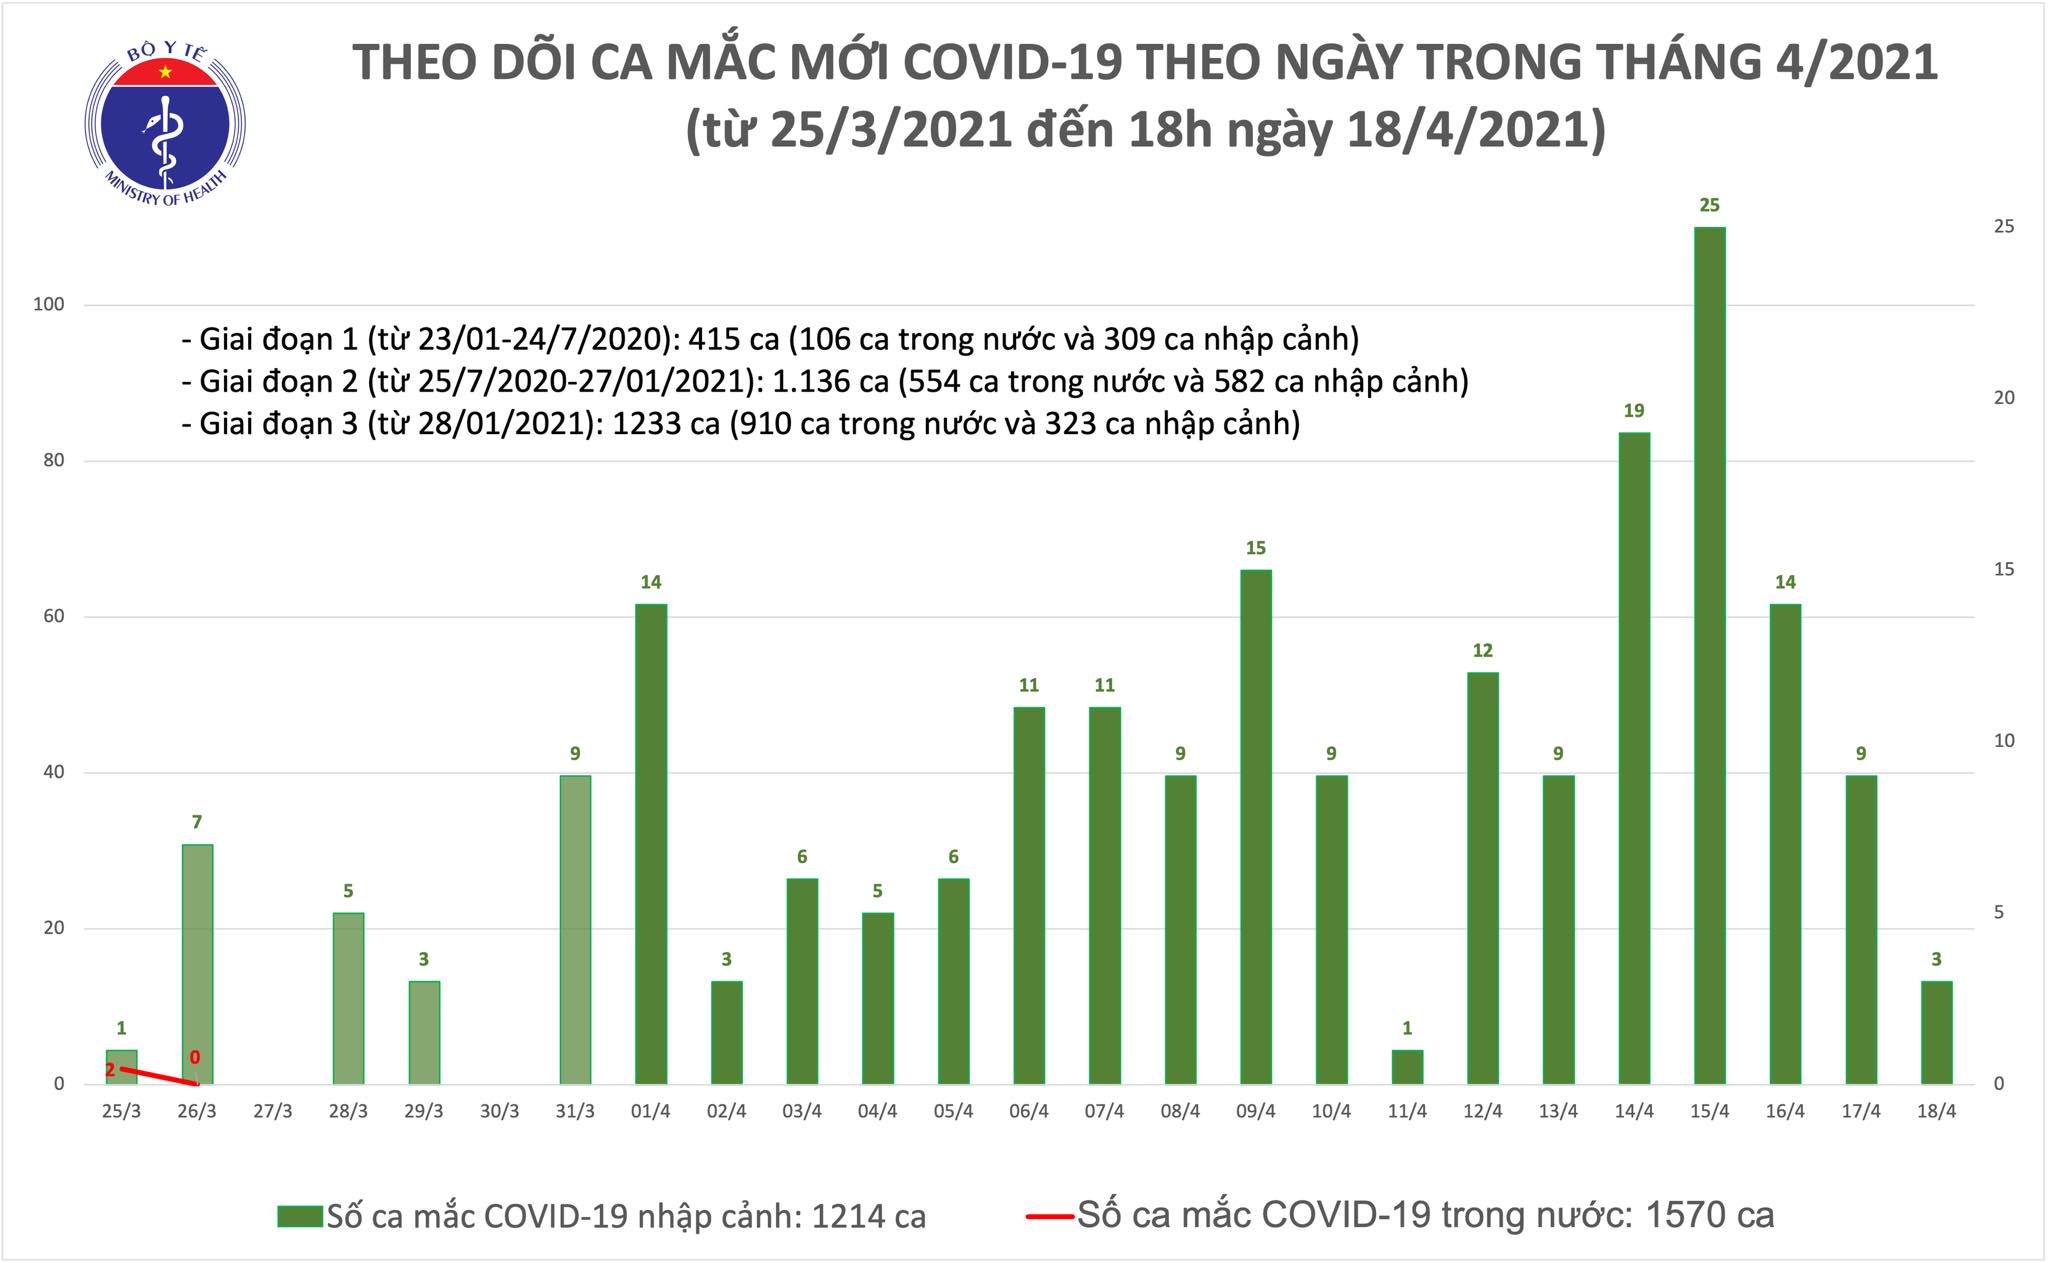 Chiều 18/4: Thêm 3 ca mắc COVID-19 tại Hoà Bình, Bắc Ninh và Khánh Hoà